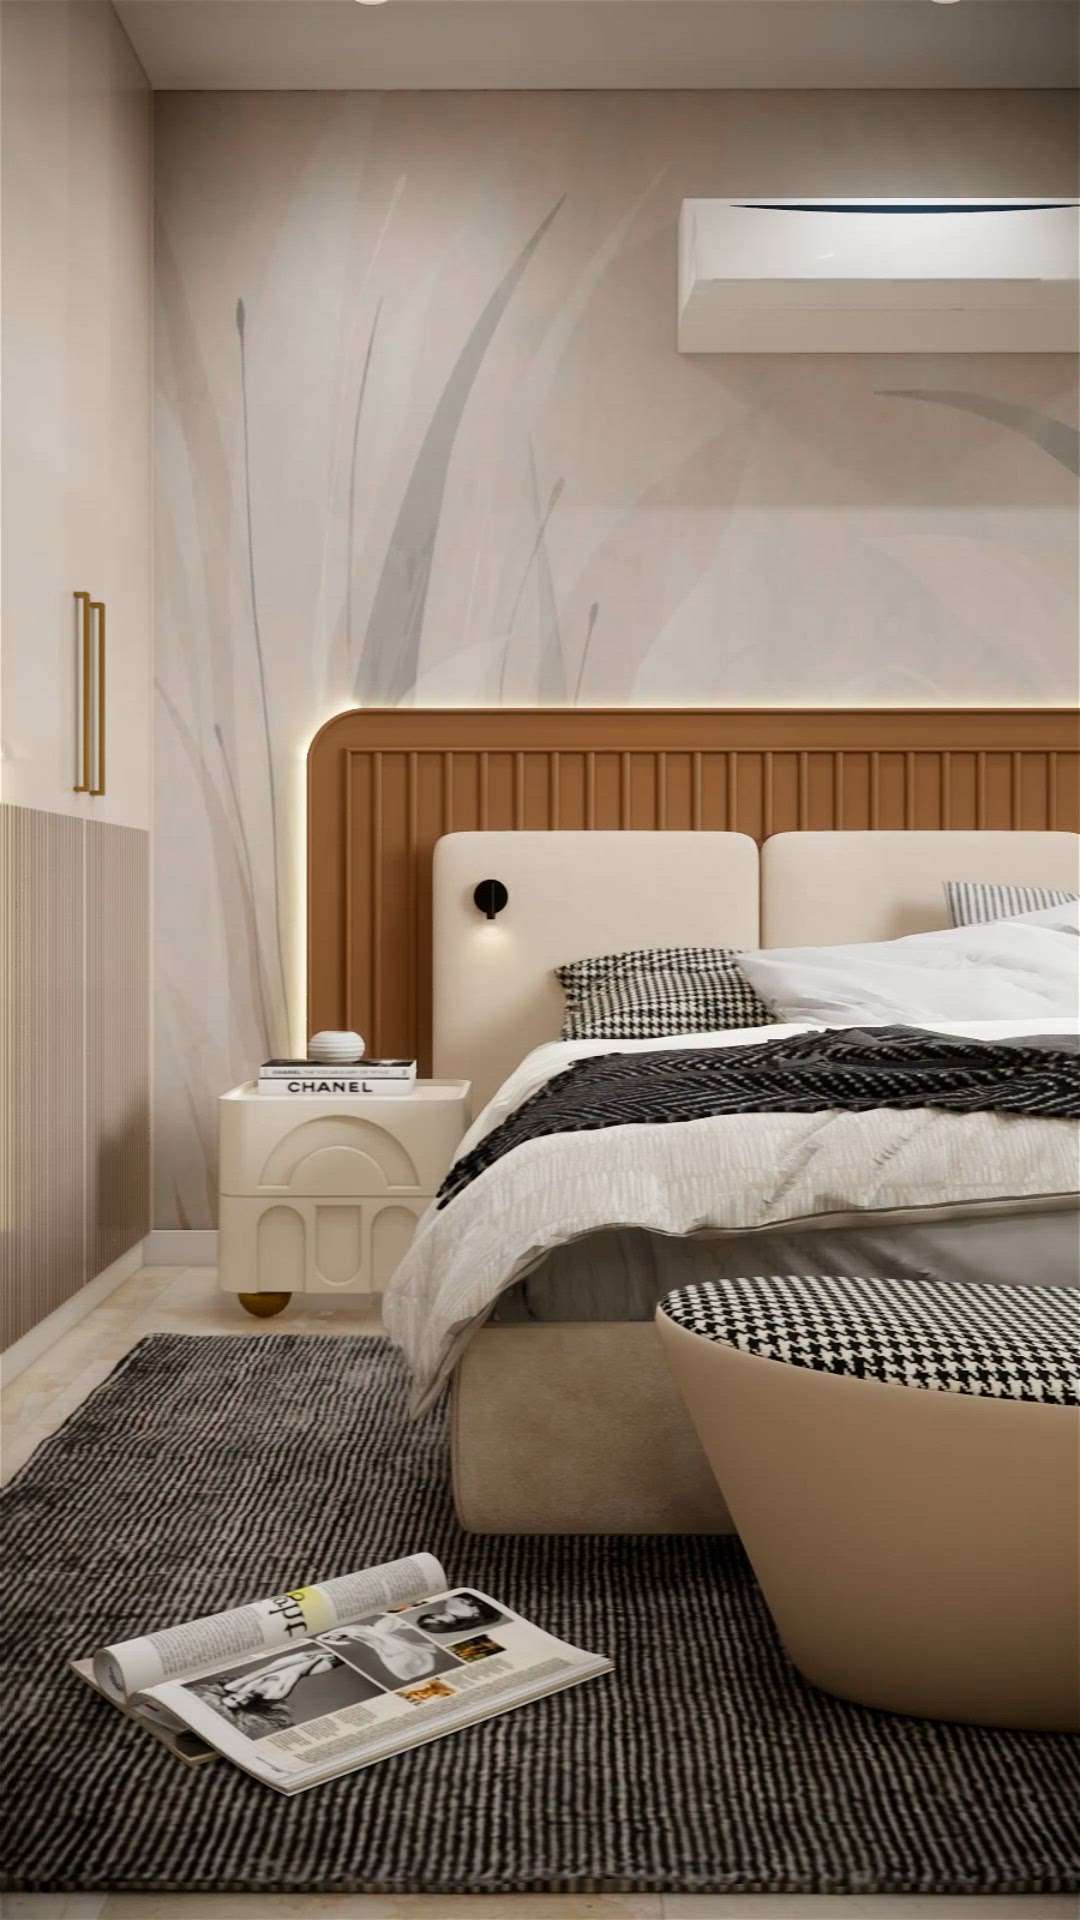 Luxury interior for small bedroom.
.
.
dimensions 10'X12' 
#BedroomDecor #MasterBedroom #KingsizeBedroom #BedroomDesigns #BedroomDesigns #BedroomIdeas #WoodenBeds #BedroomCeilingDesign #bedroominteriors